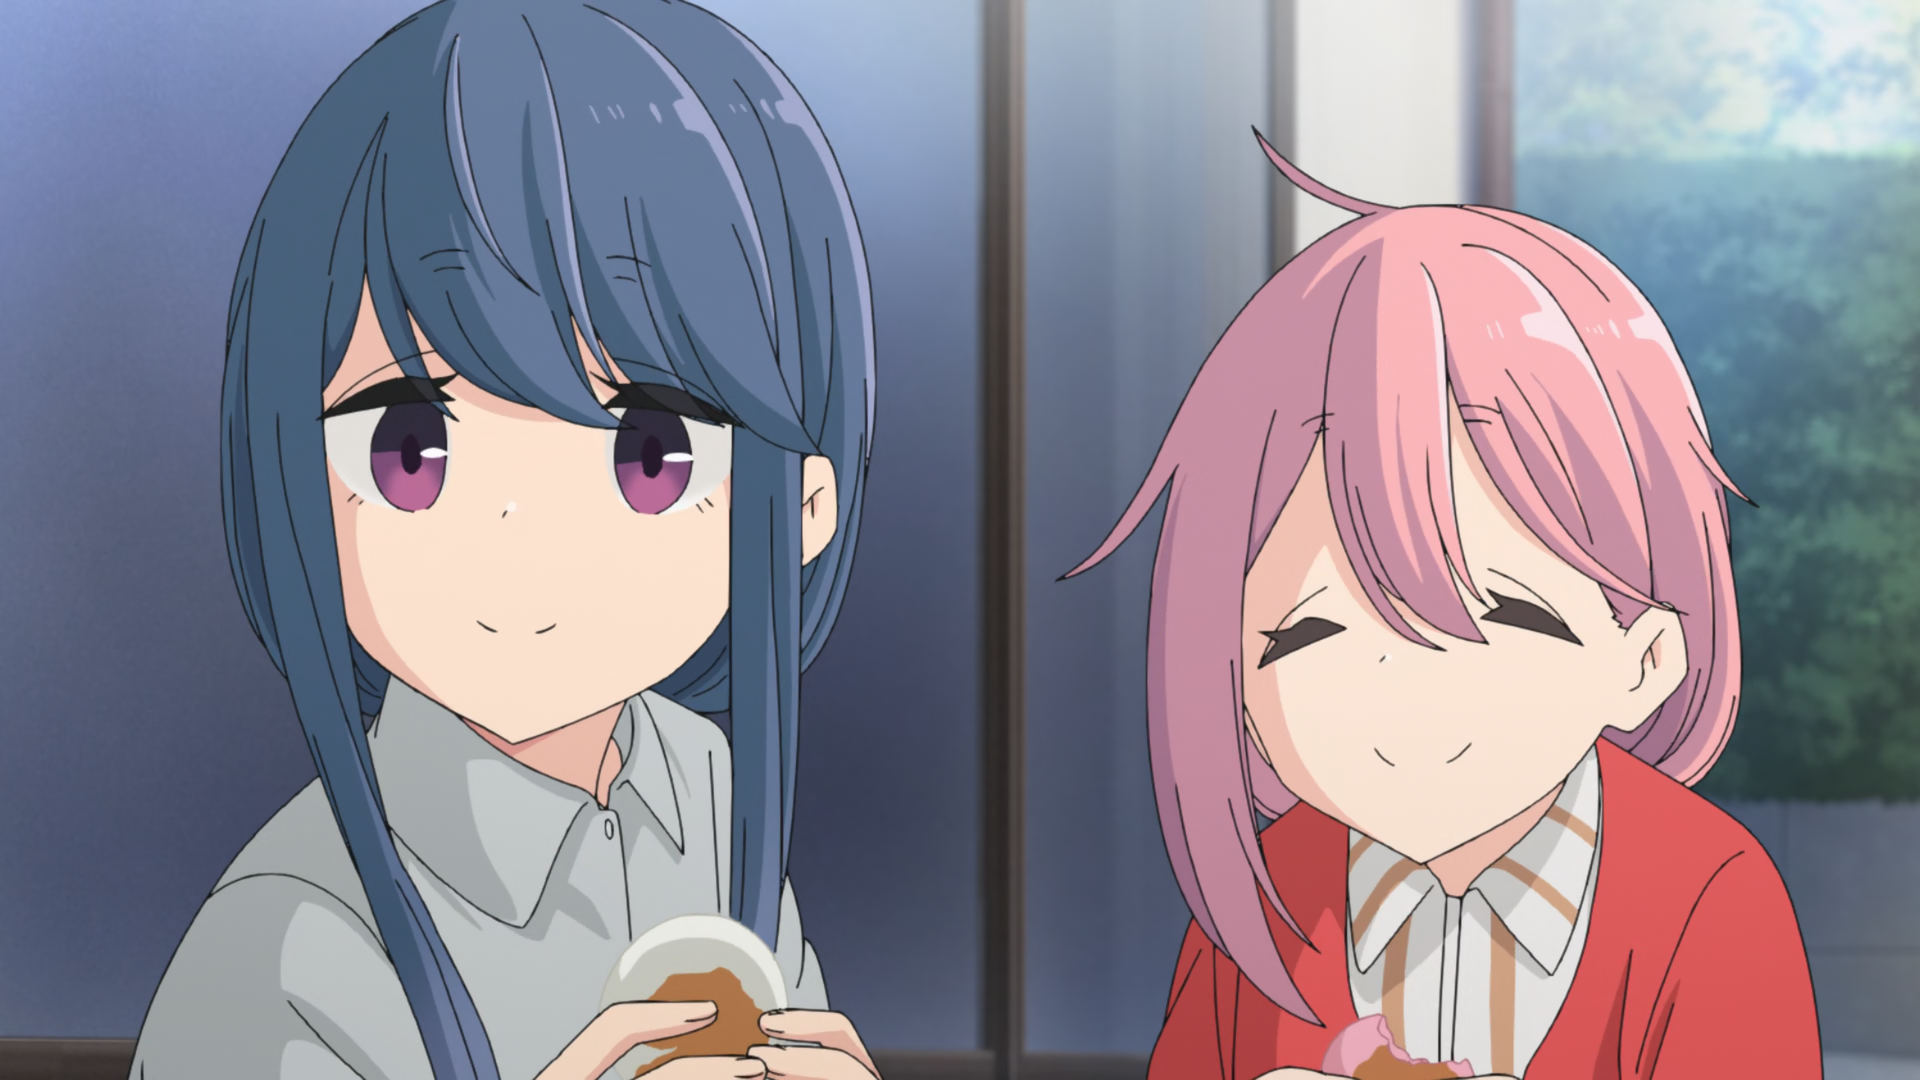 Nadeshiko y Rin comiendo juntas en un campamento relajado